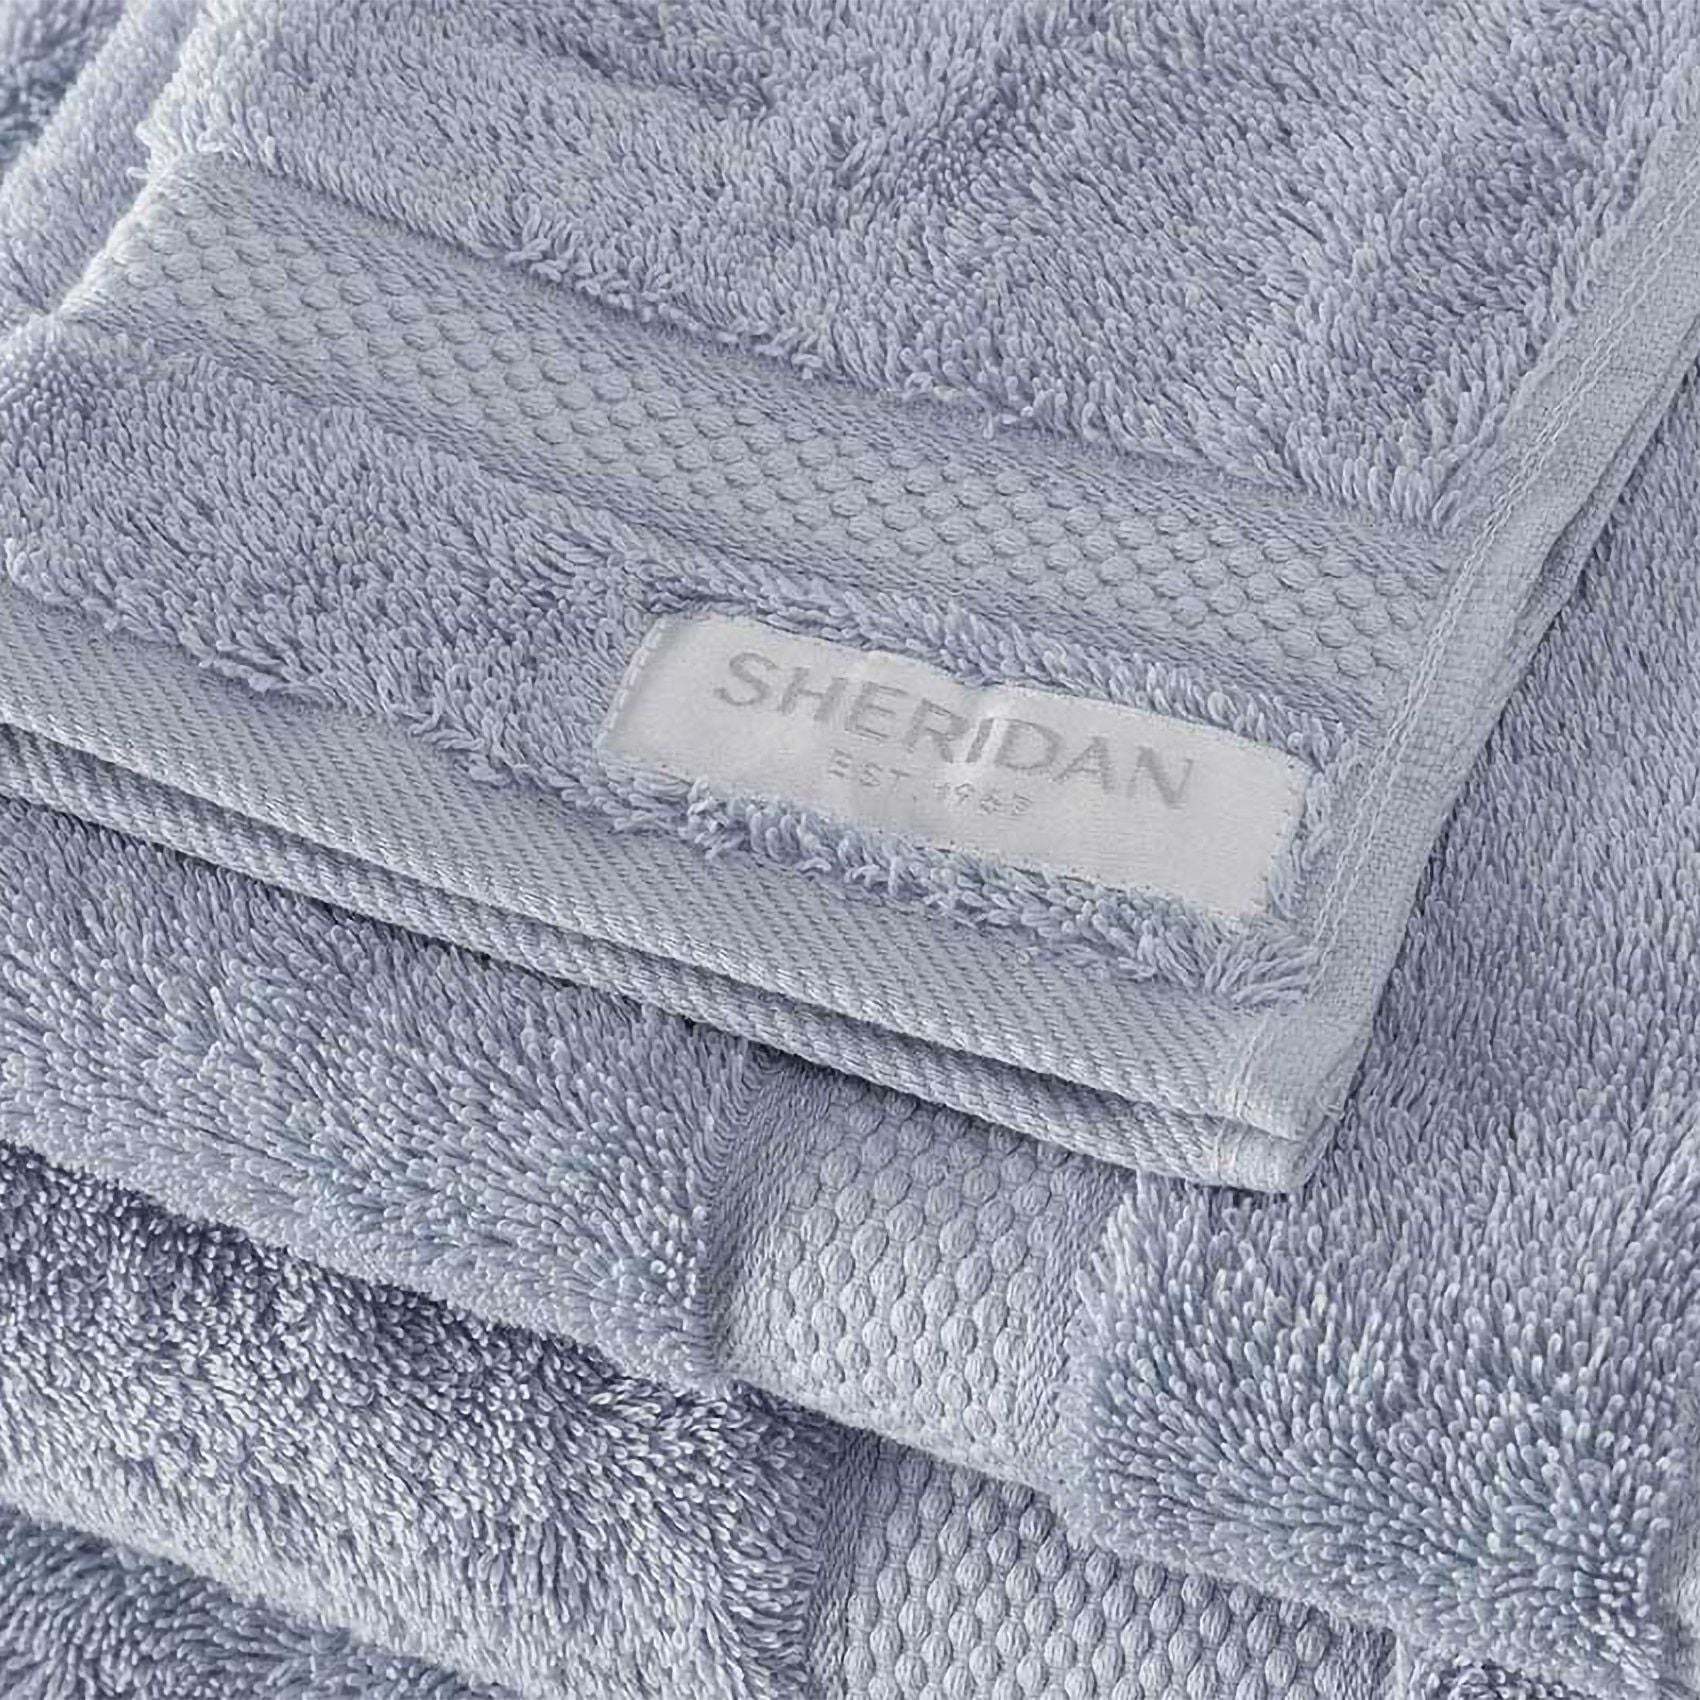 Sheridan Luxury Egyptian Towel - Dusty Blue